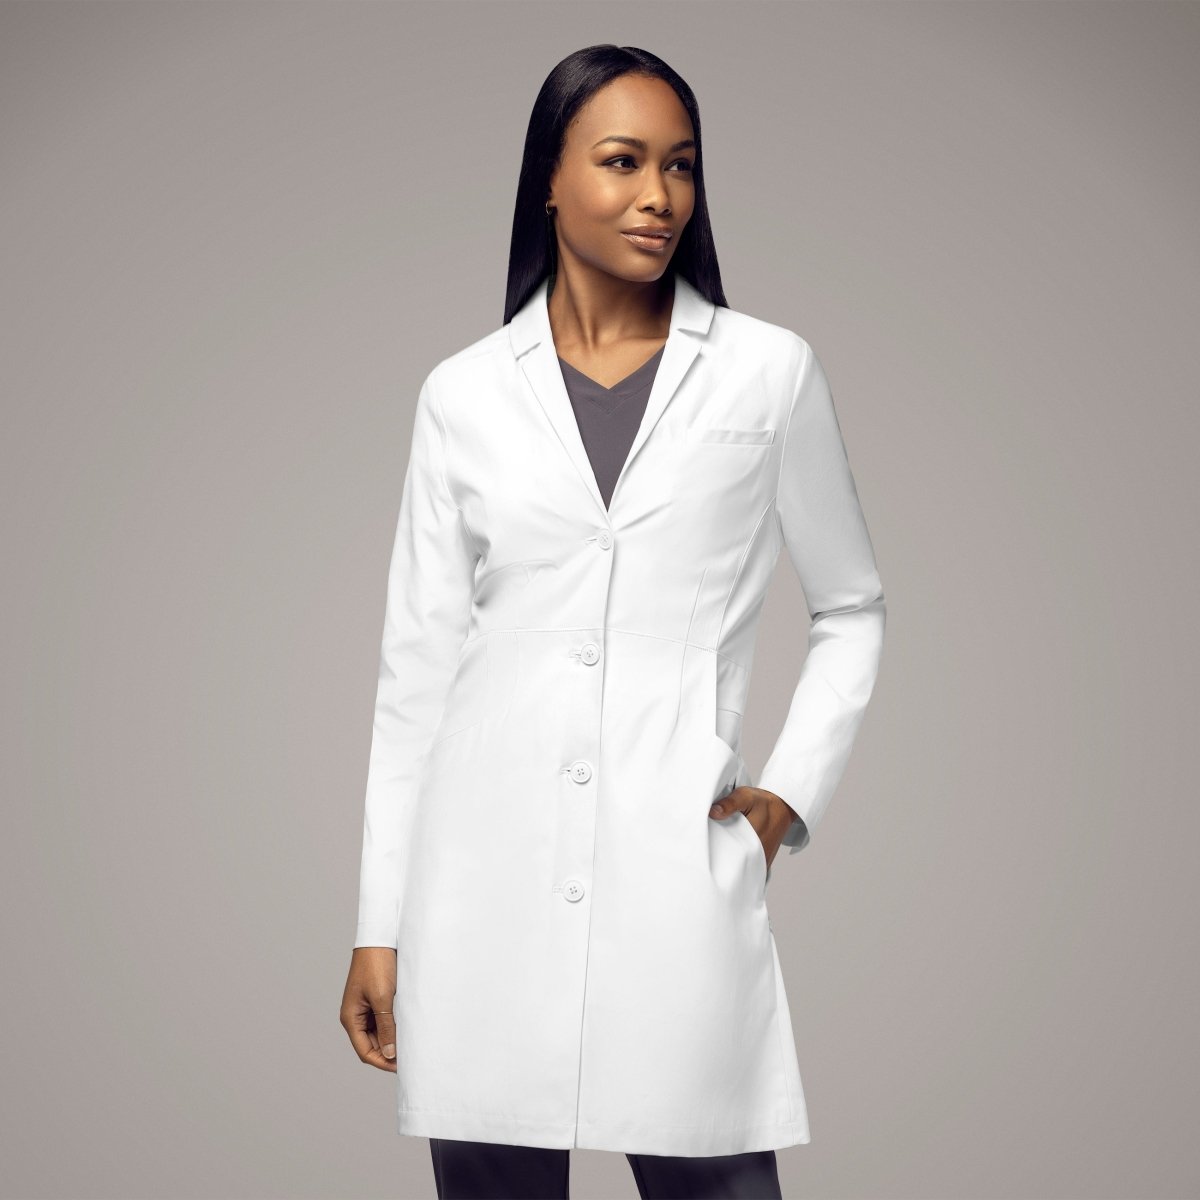 Women's Long Lab Coat 35" - Scrub Hub